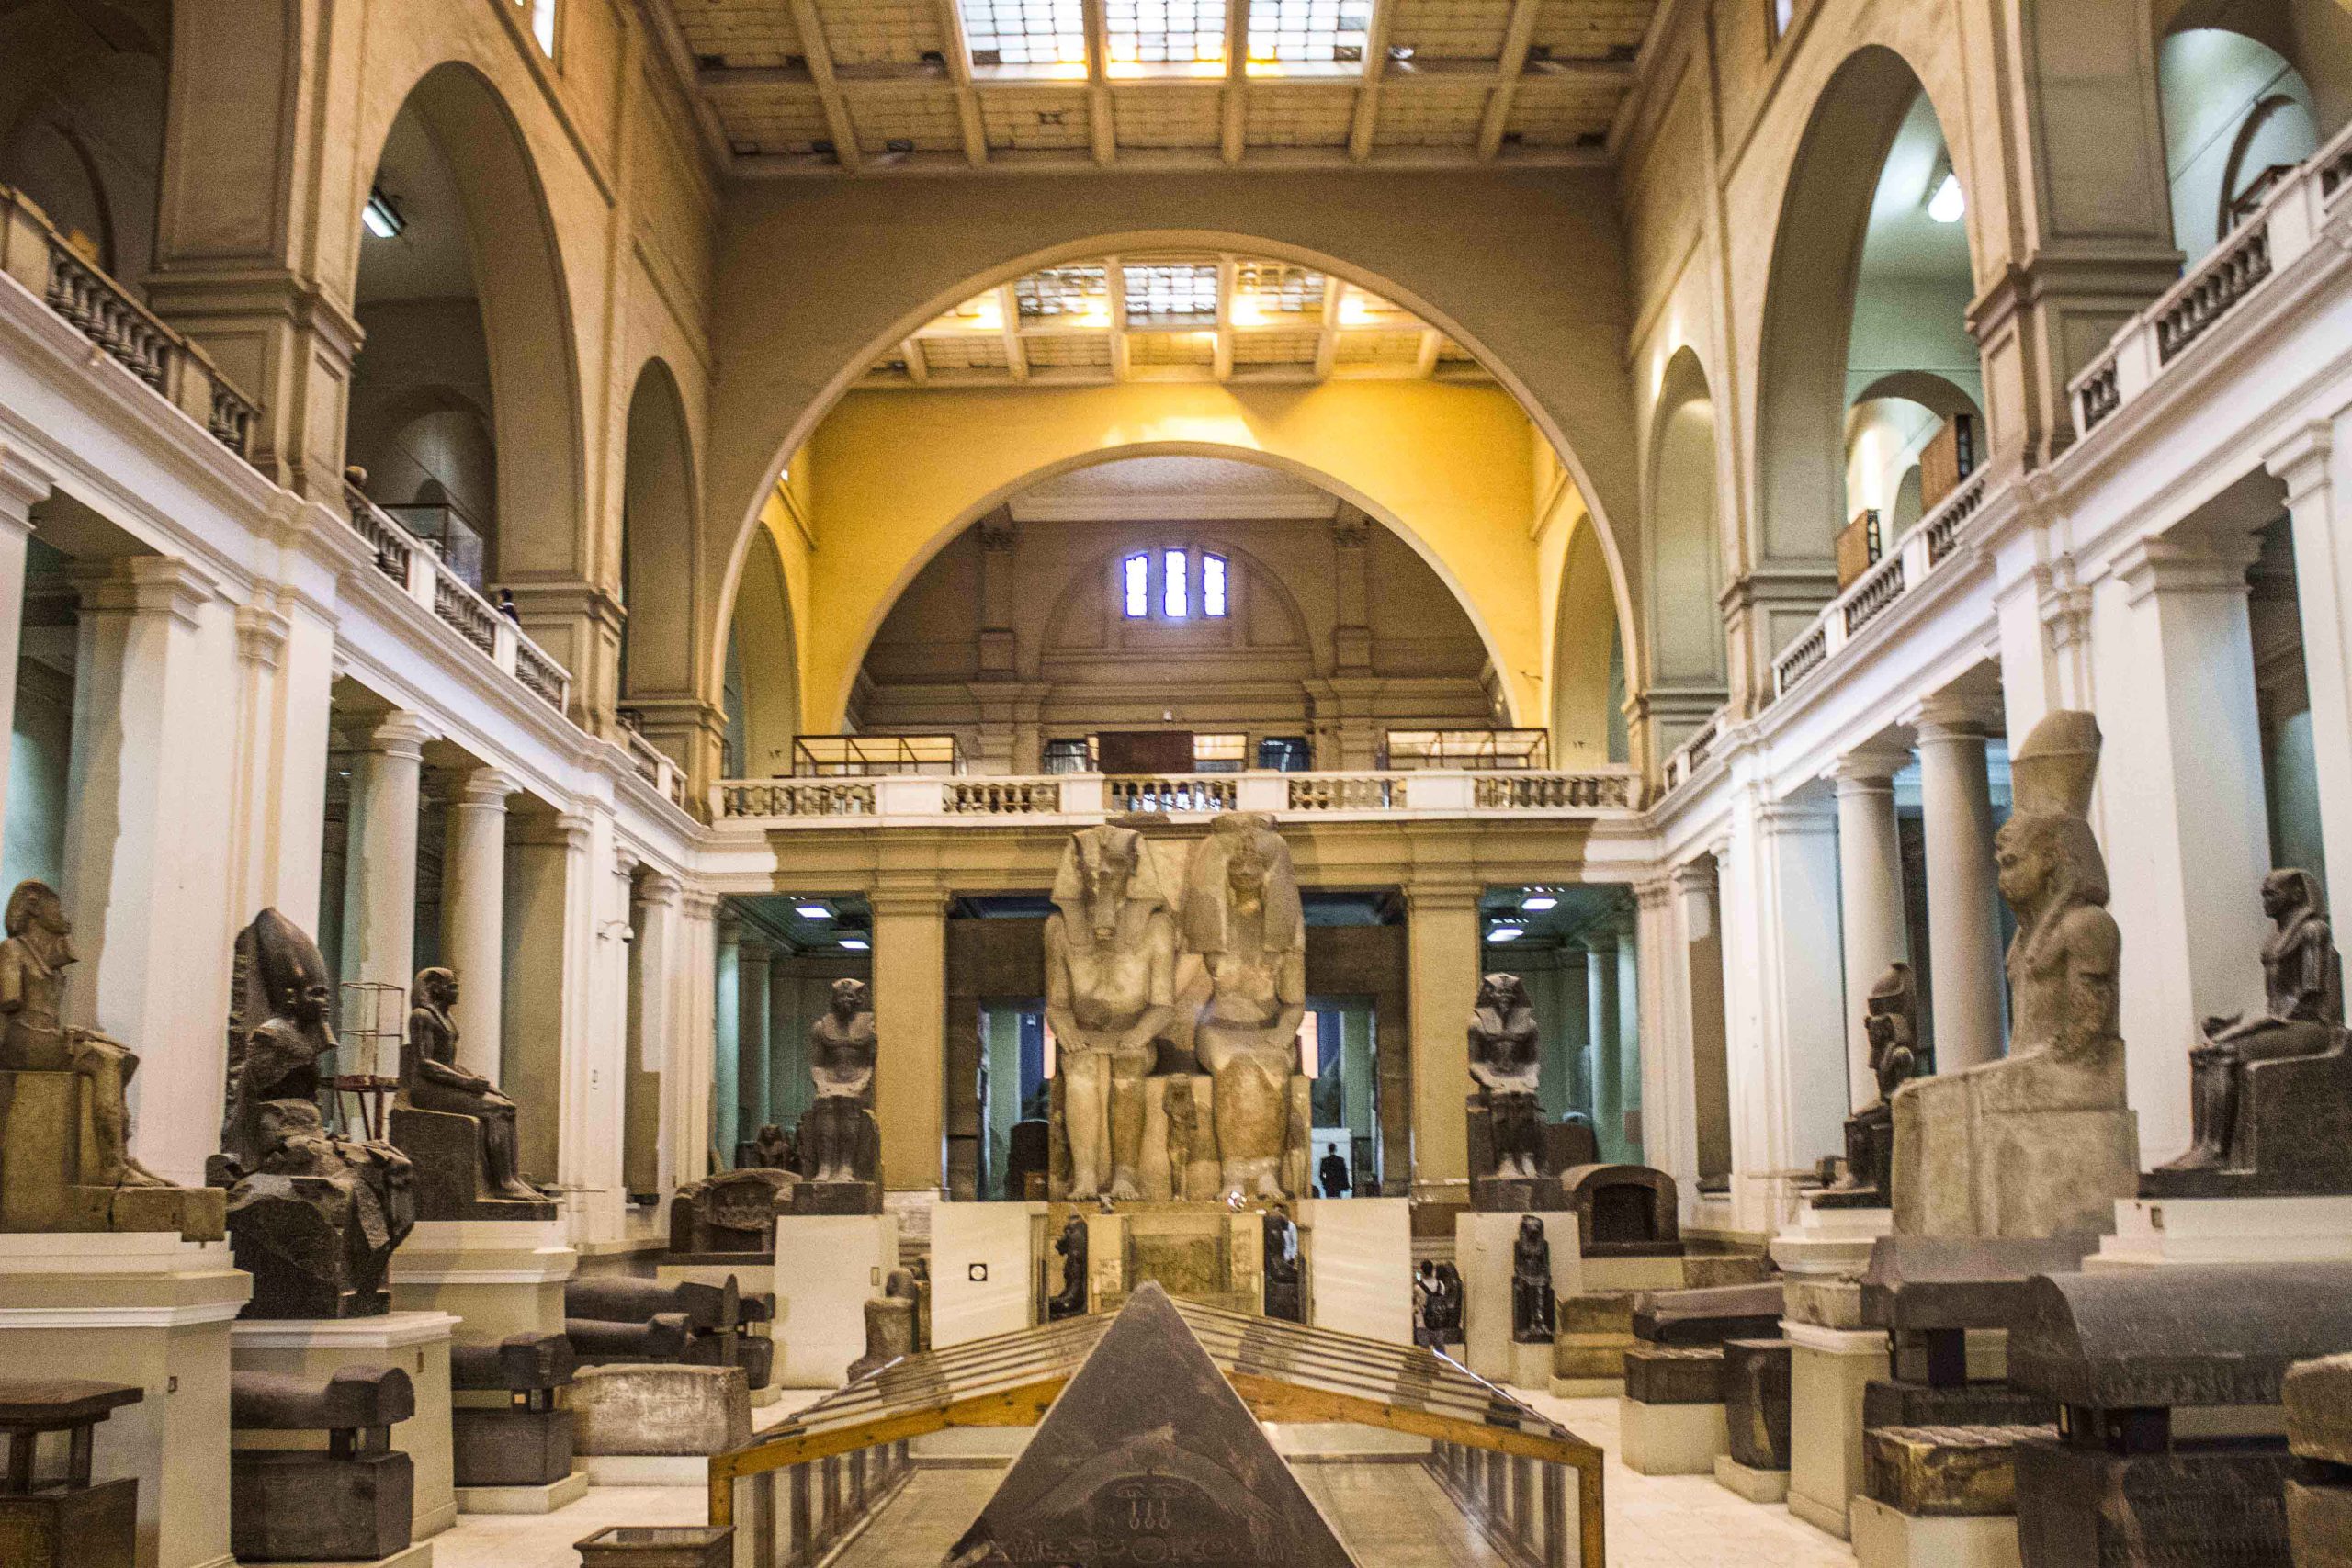 المتحف المصري scaled مصر تحتفل بذكرى مرور 126 عام علي وضع حجر أساس المتحف المصري بالتحرير 